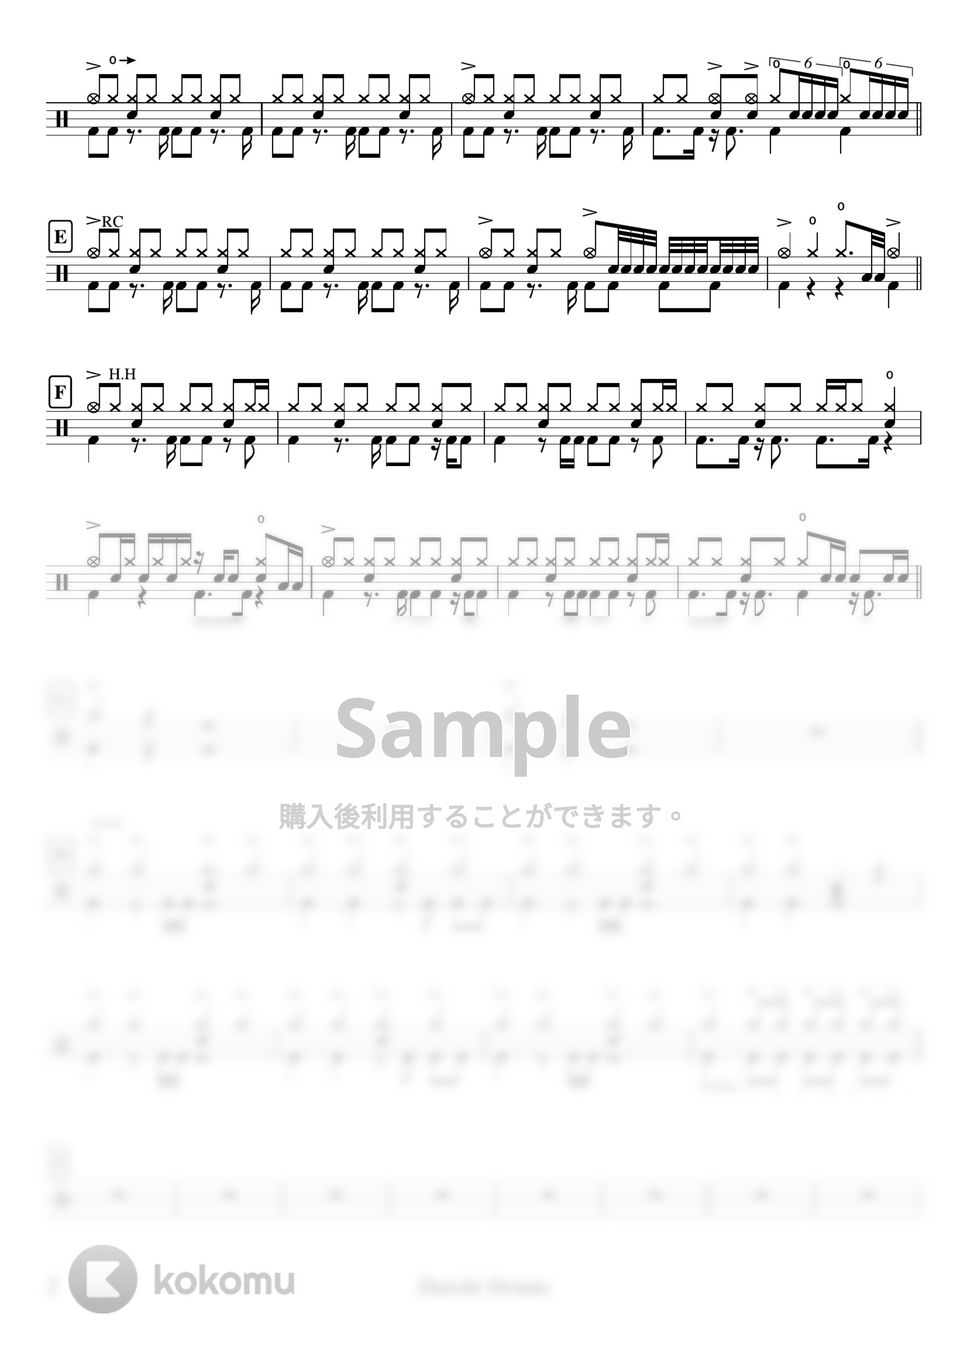 東京卍リベンジャーズ - Cry Baby by Daichi Drums